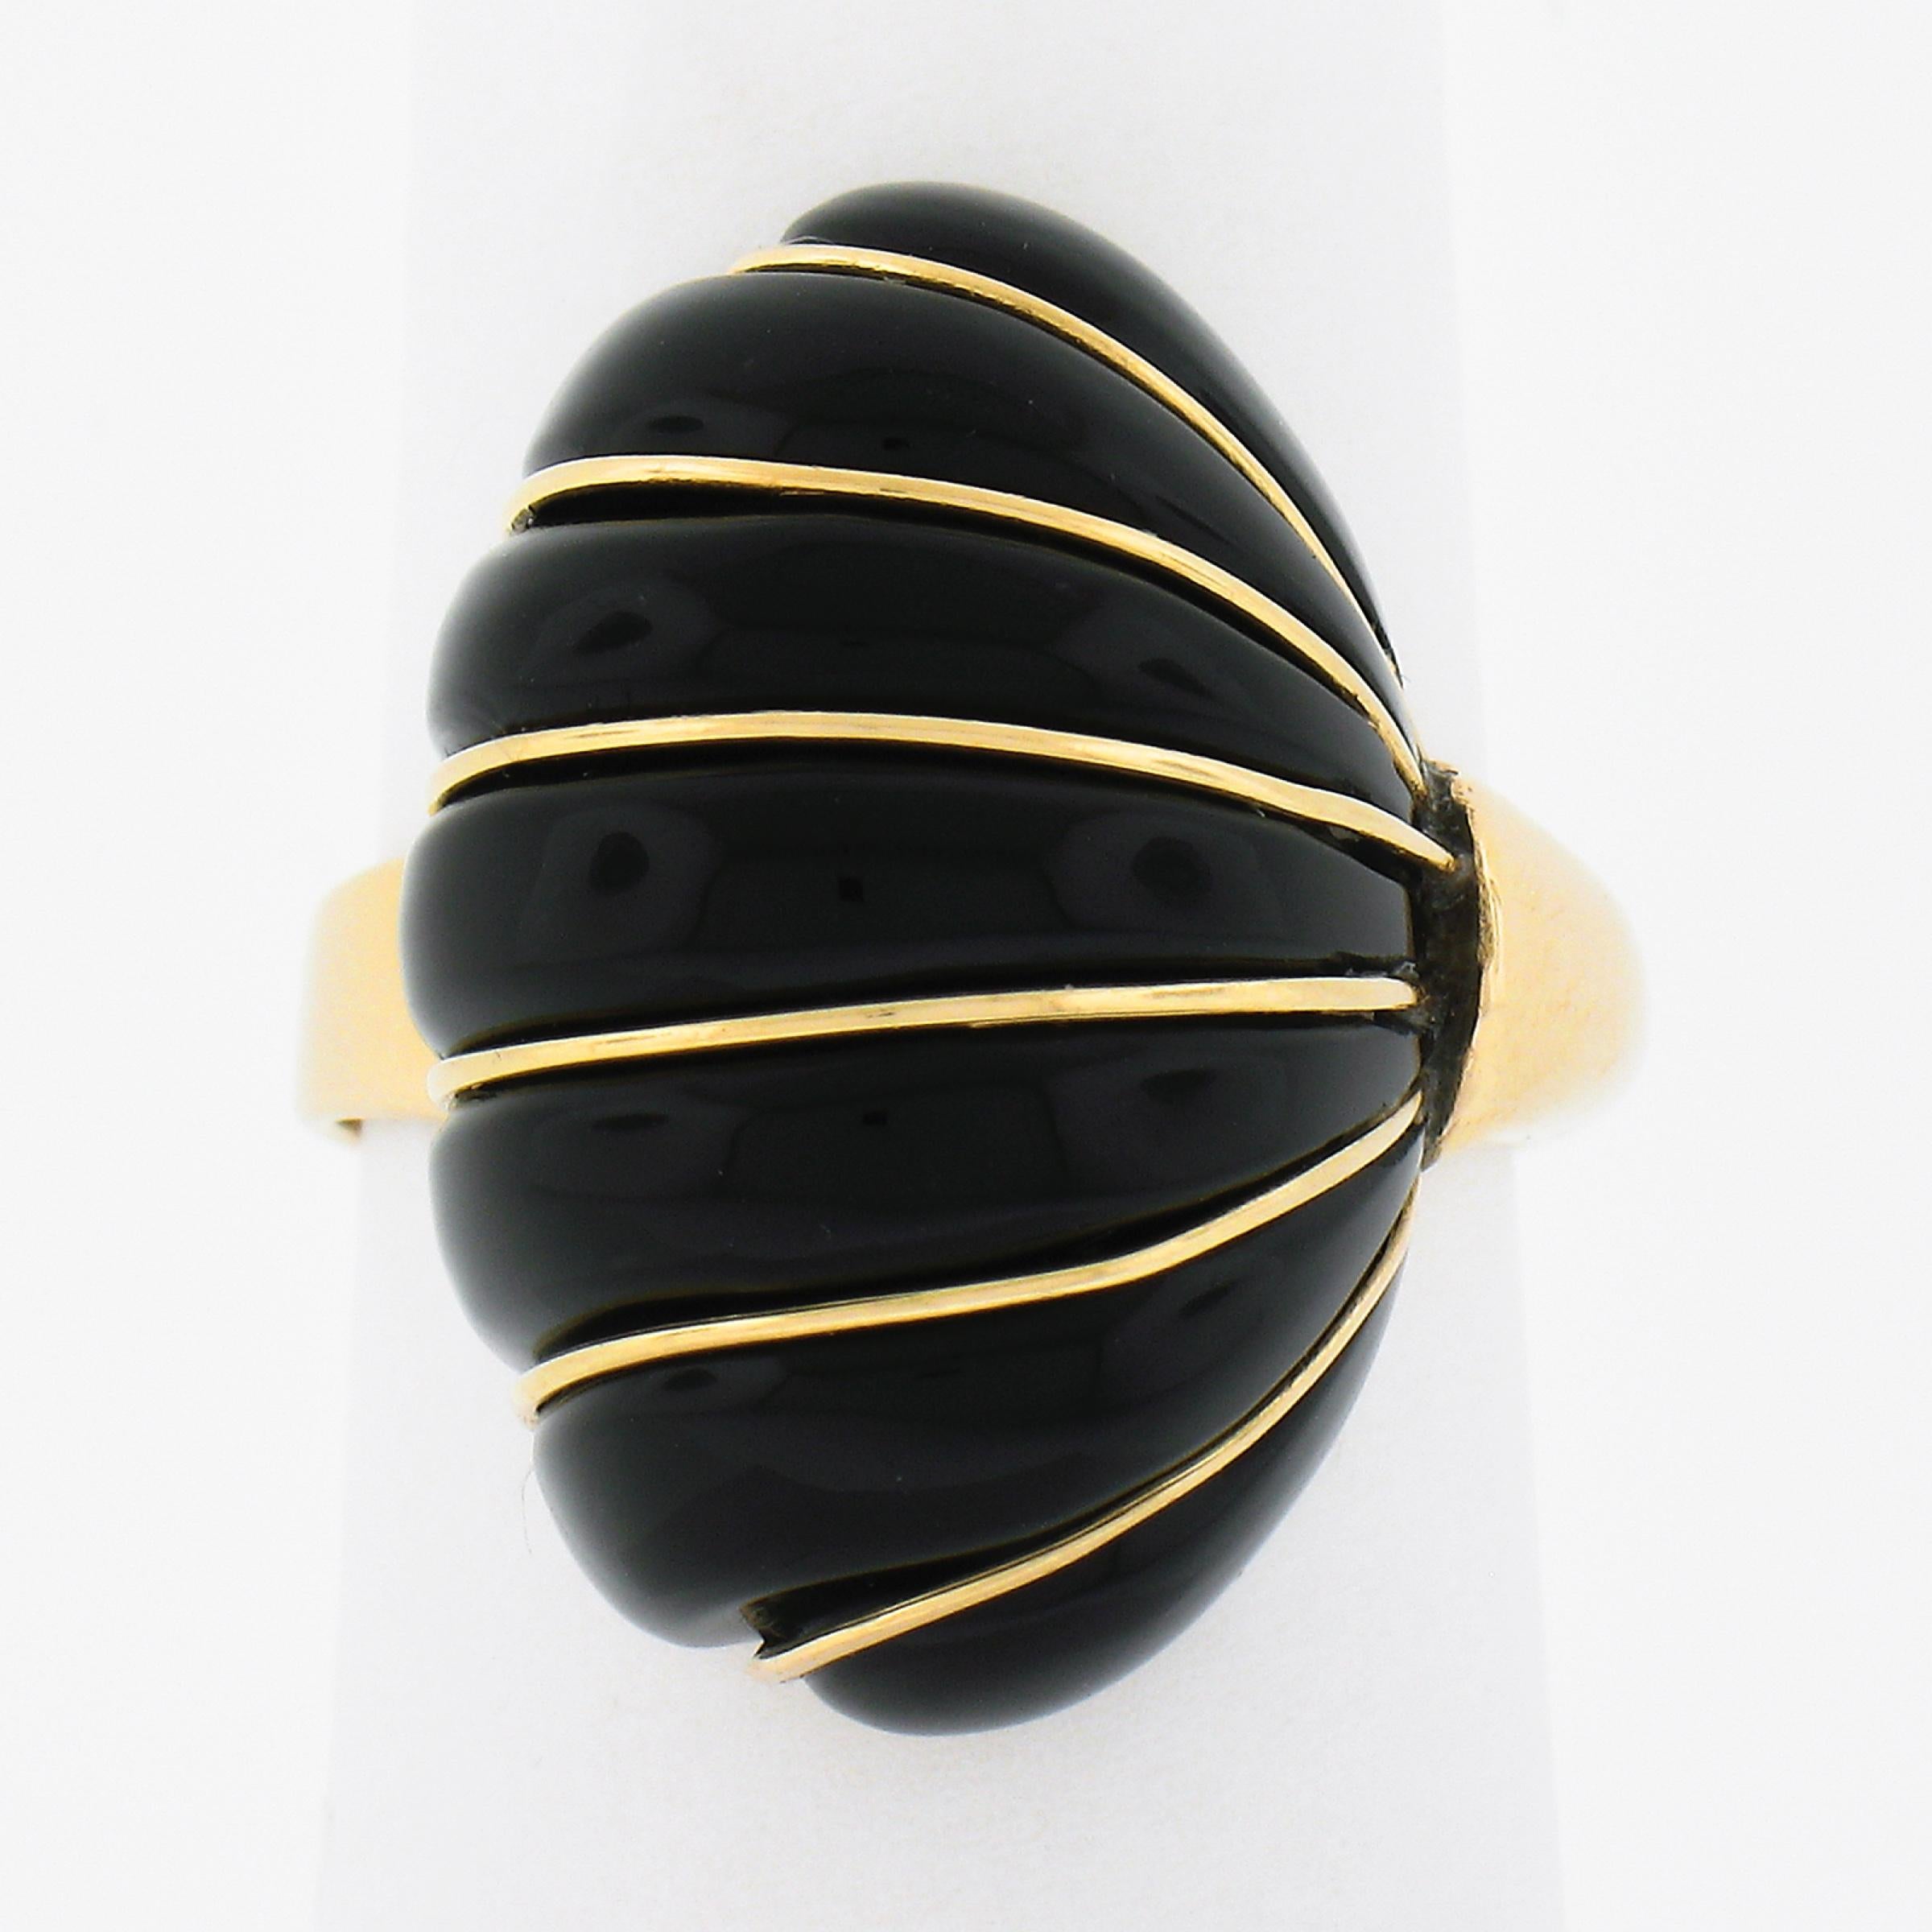 Cette magnifique bague de cocktail en or jaune massif 14 carats présente un ravissant et unique motif en forme de coquillage festonné, composé d'une véritable pierre d'onyx noir. Sa grande taille et sa couleur noire pure confèrent à cette bague une